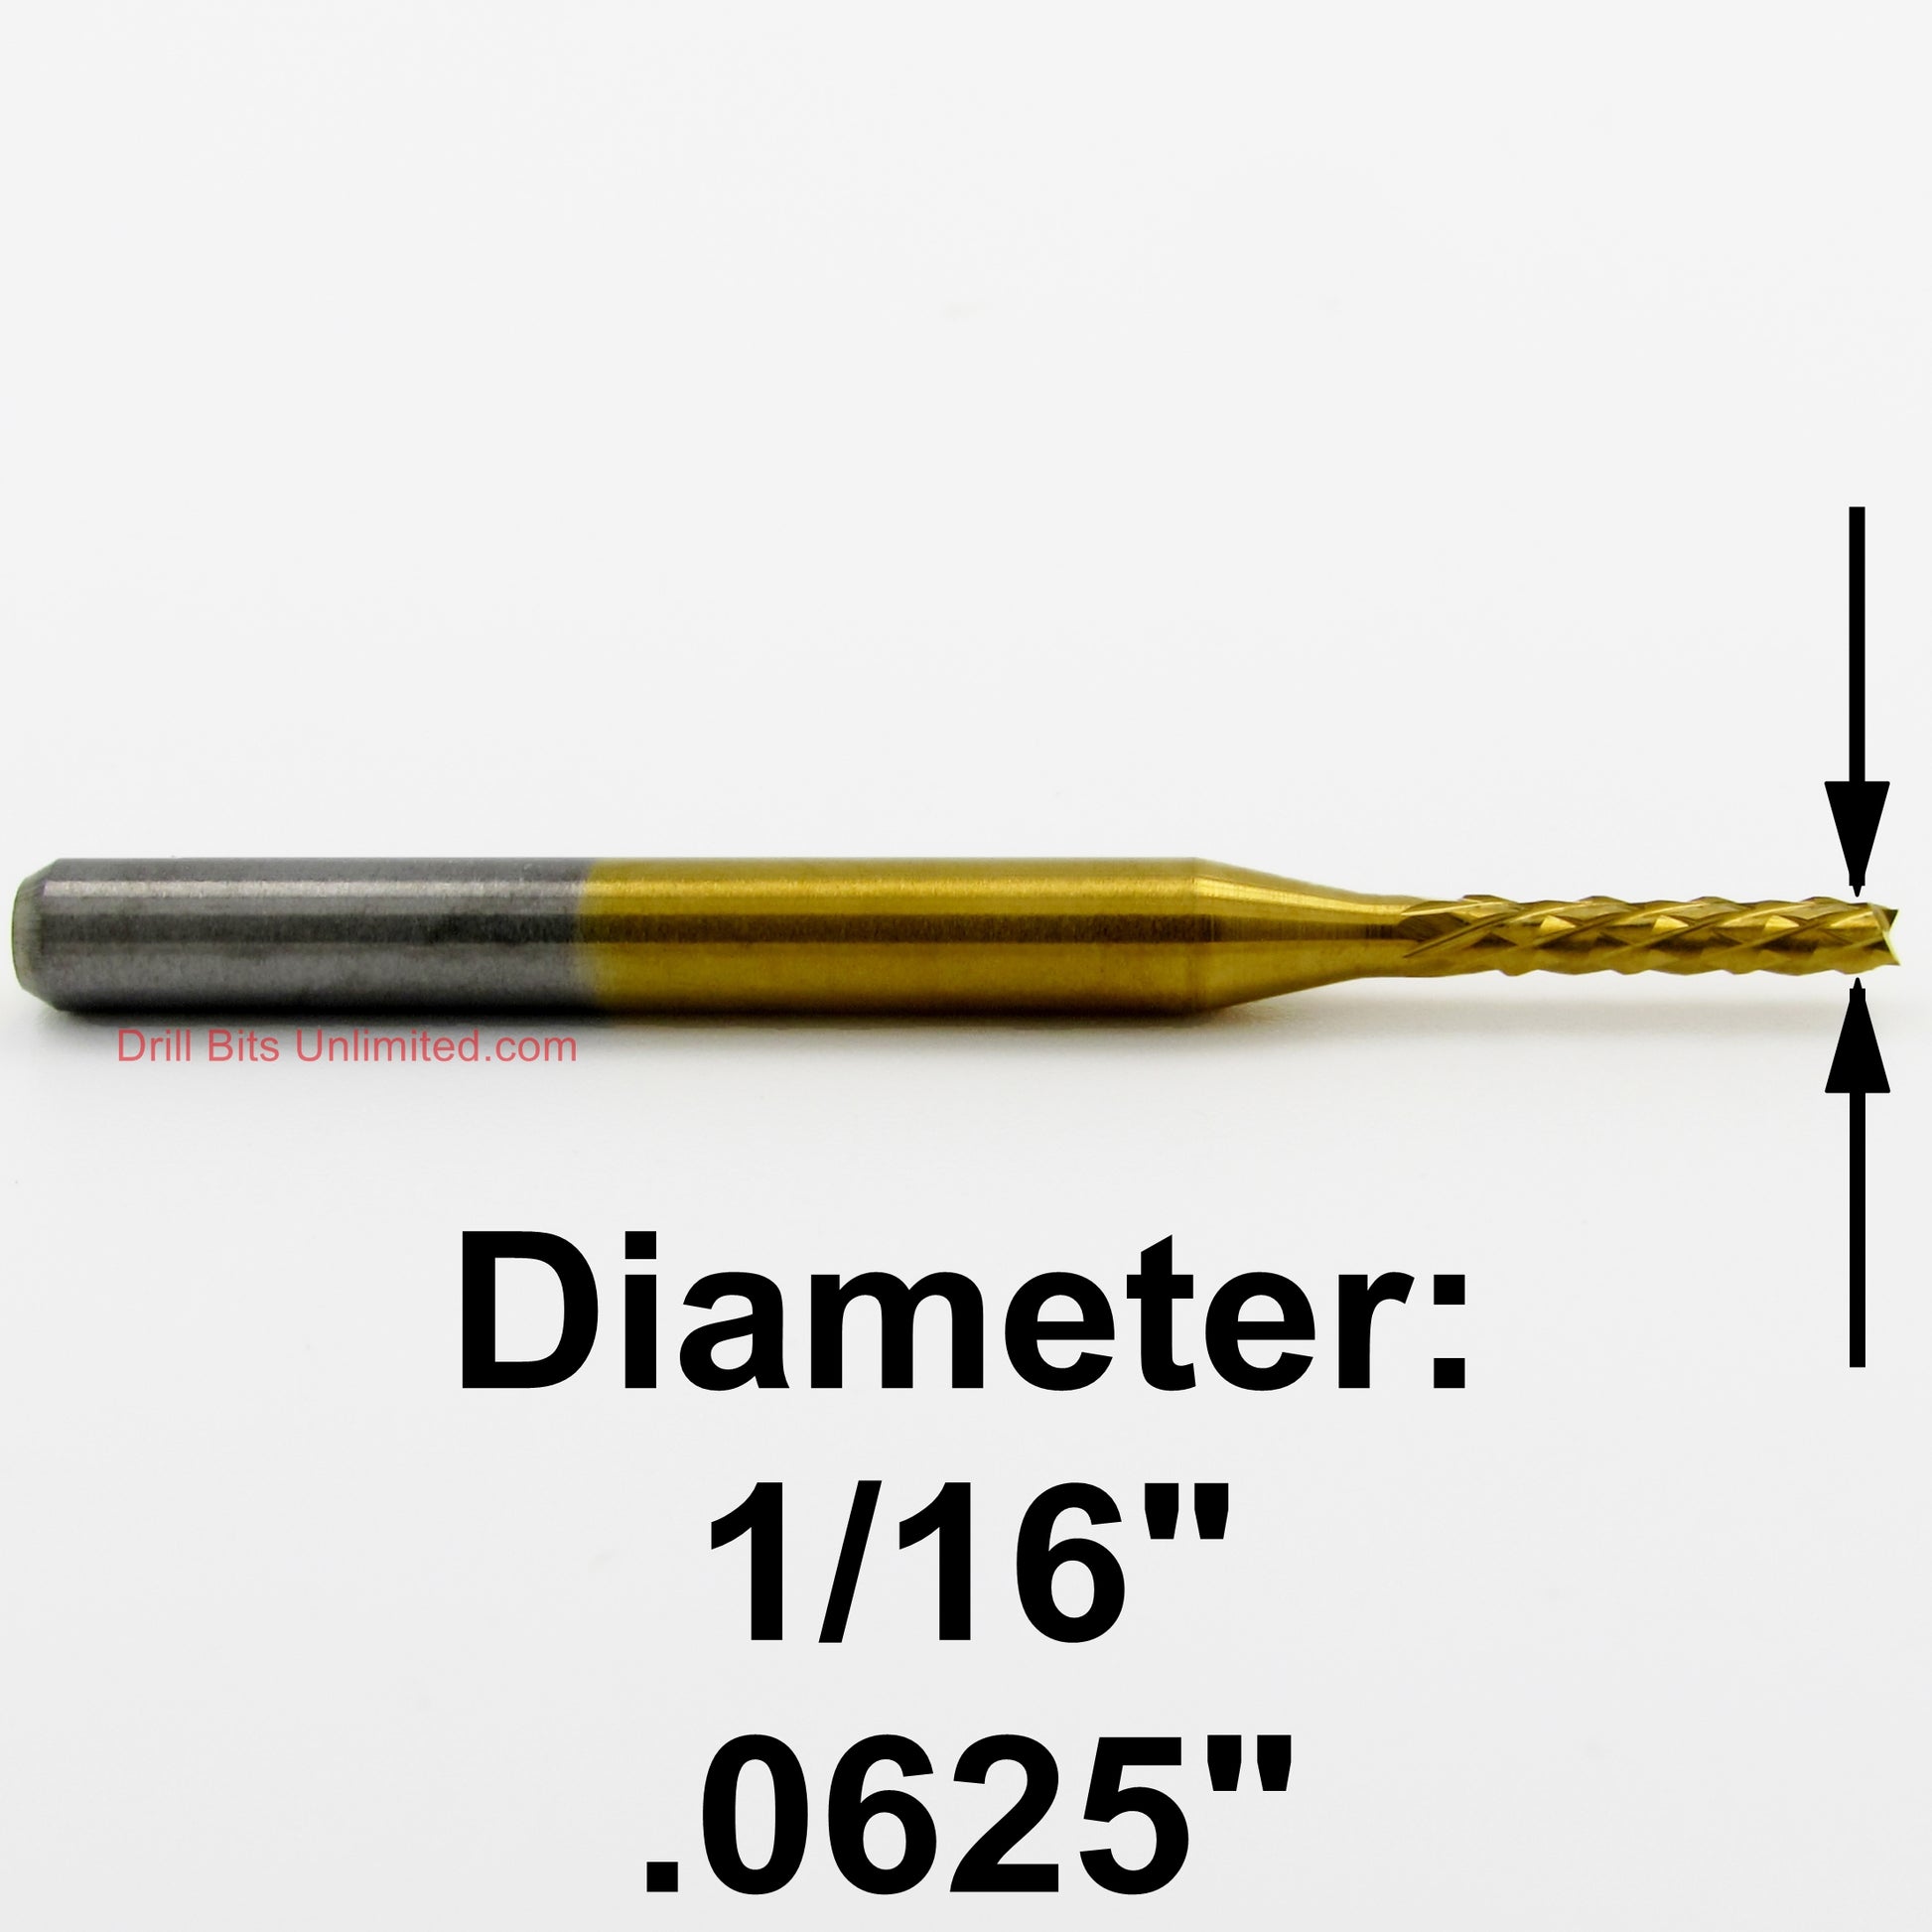 1/16" X .400" LOC Down Cut Router - Diamond Pattern Flutes - Titanium / Solid Carbide R177